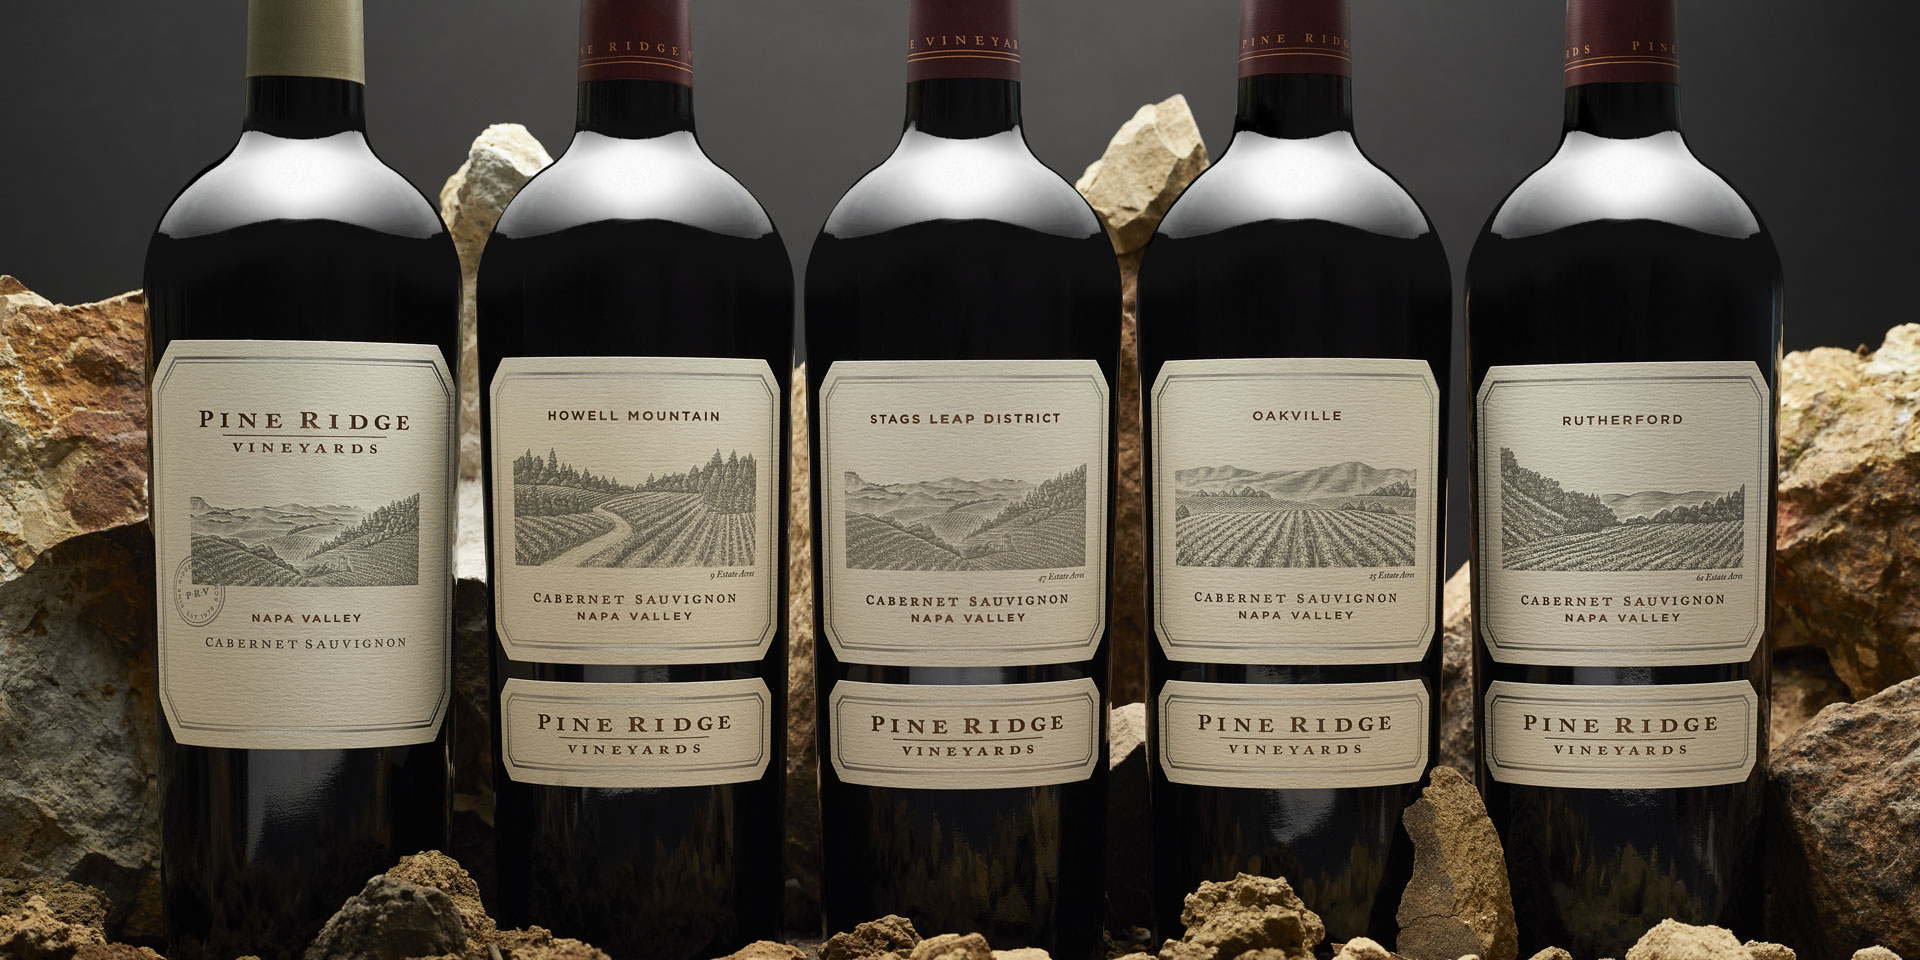 ping ridge - 04 - Wines-wallpaper - pine ridge winery